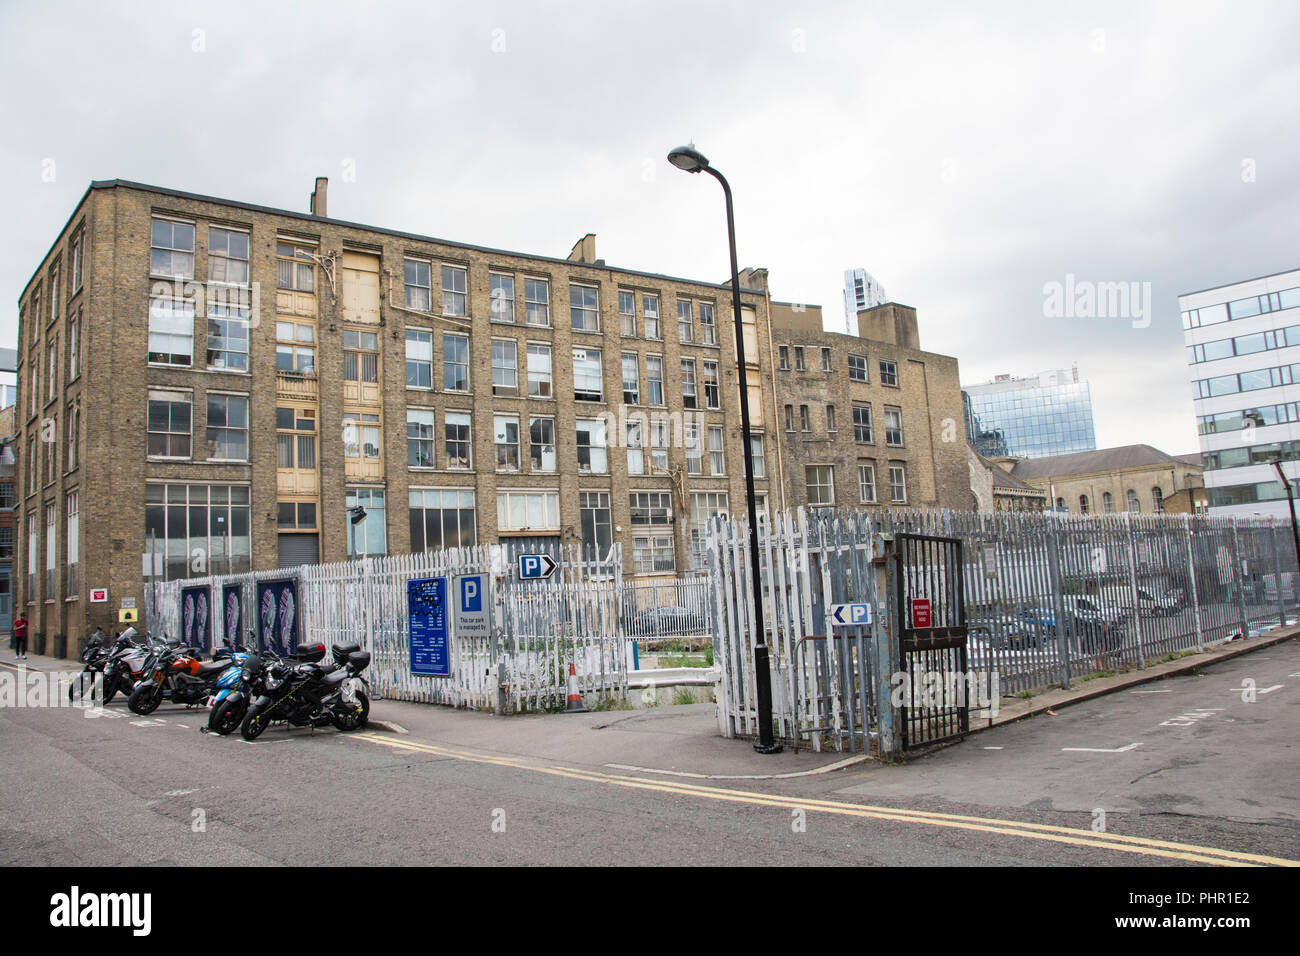 La régénération urbaine autour de Clere Street car park, London, UK Banque D'Images